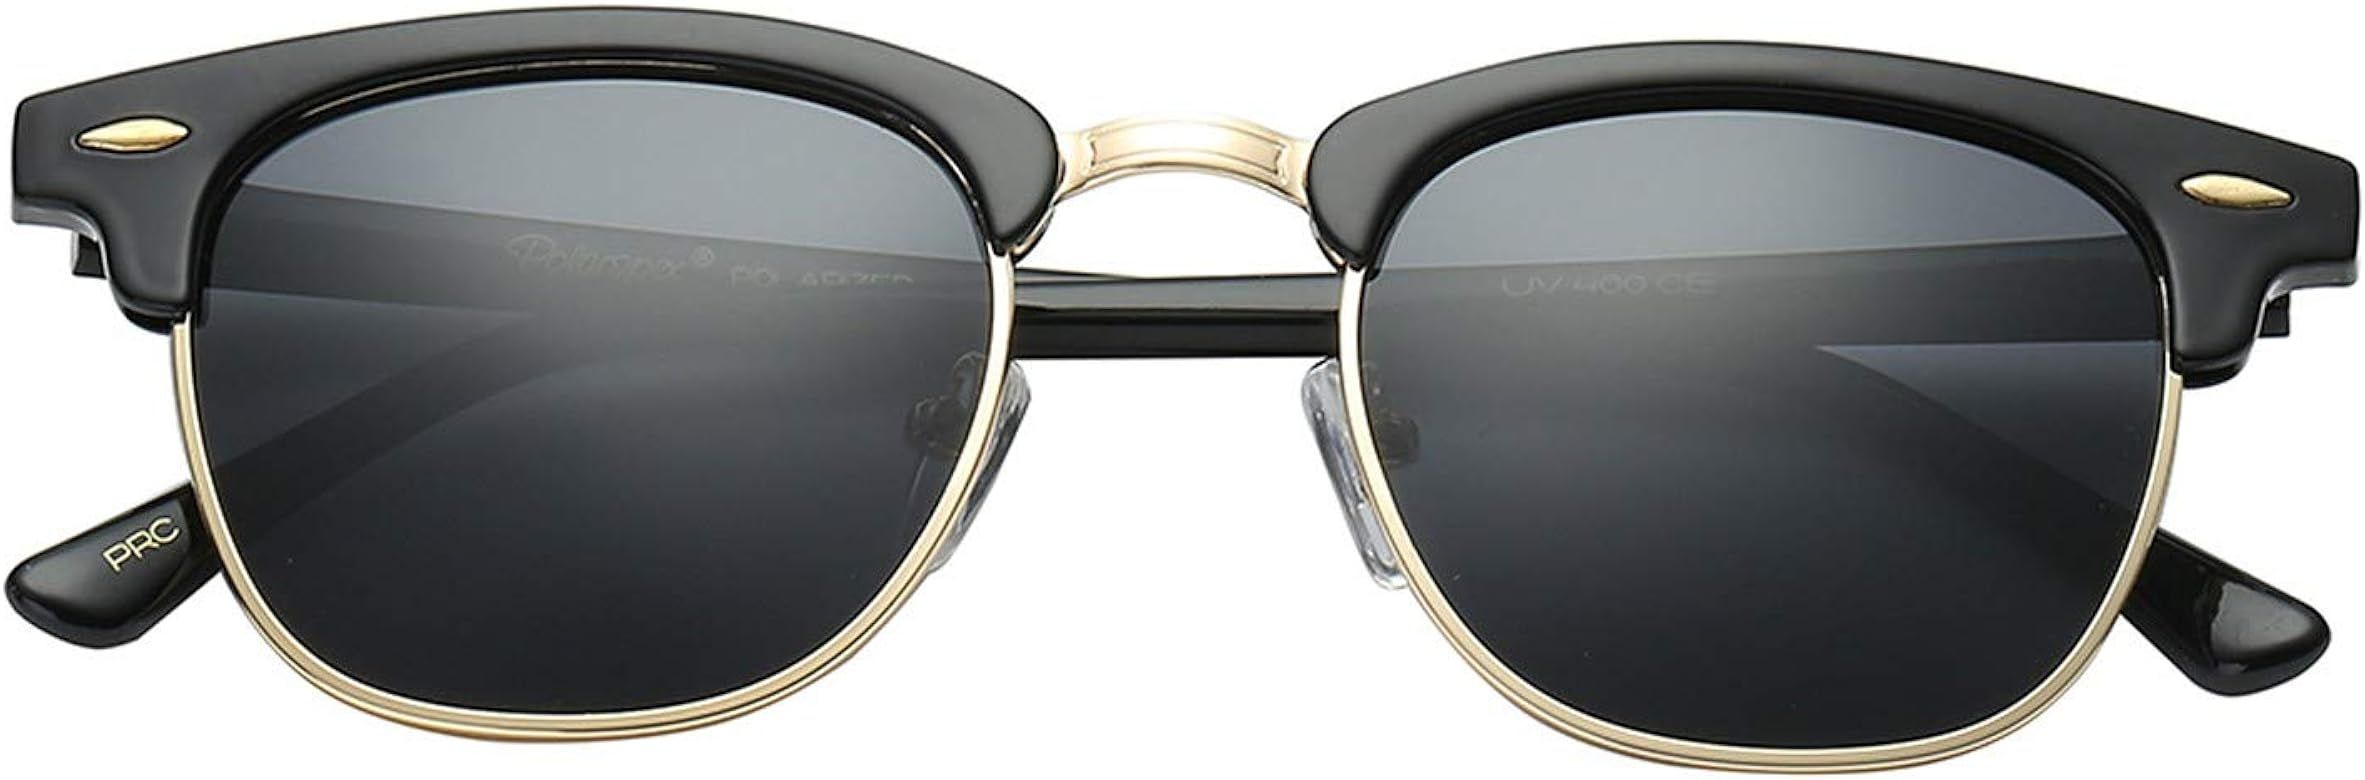 Polarspex Unisex Retro Classic Stylish Malcom Half Frame Polarized Sunglasses | Amazon (US)